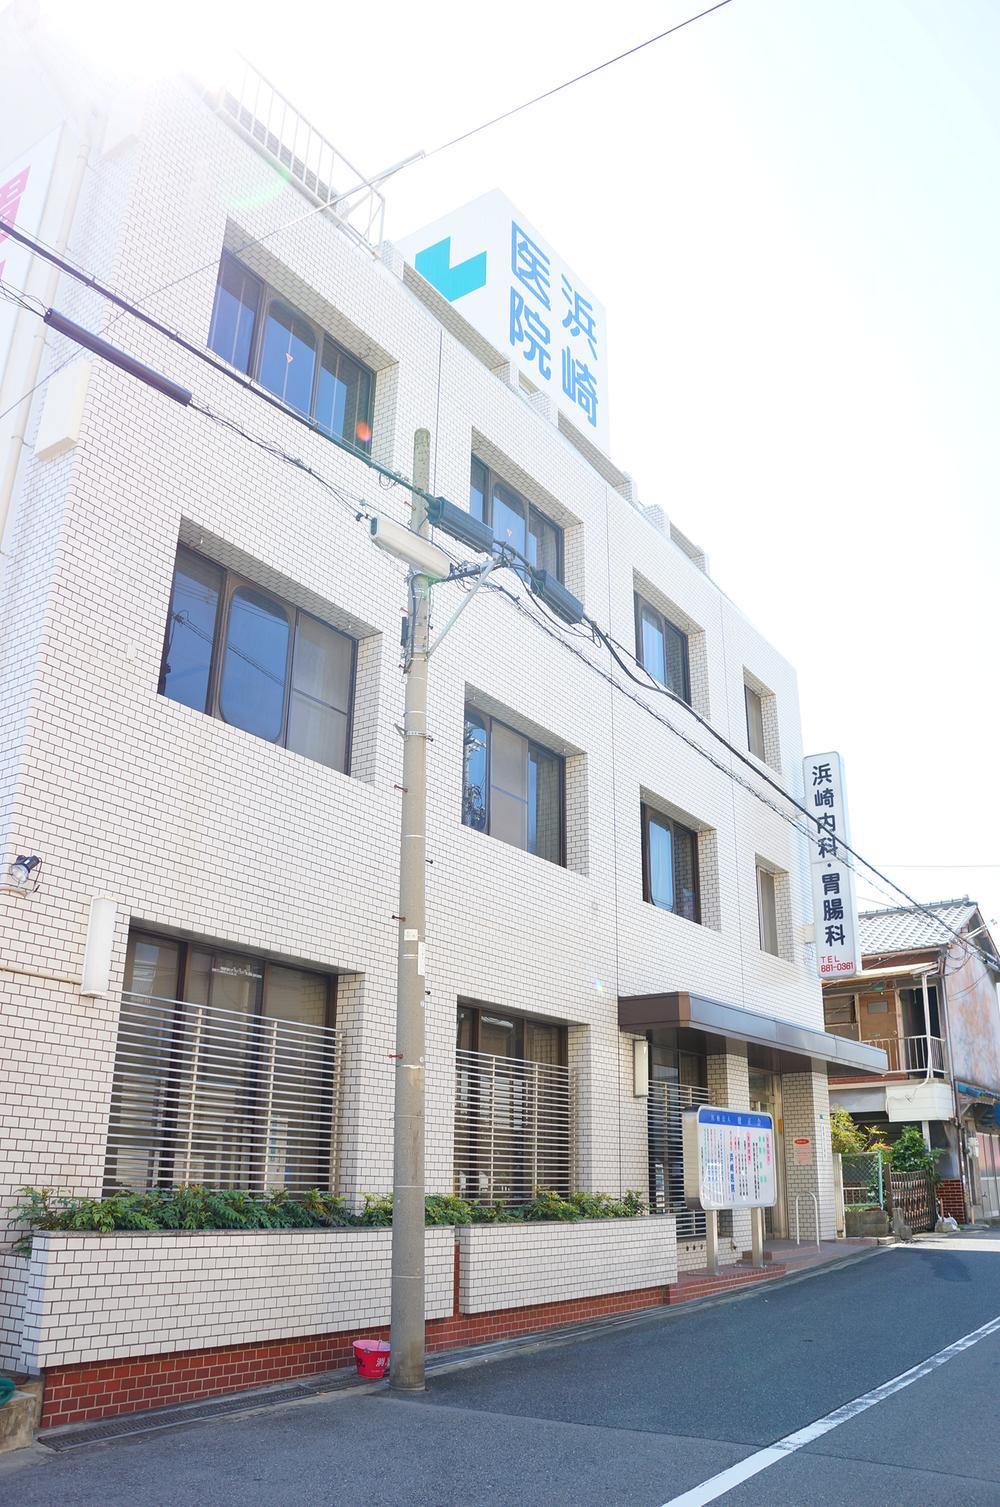 Hospital. 160m to Ayumi clinic